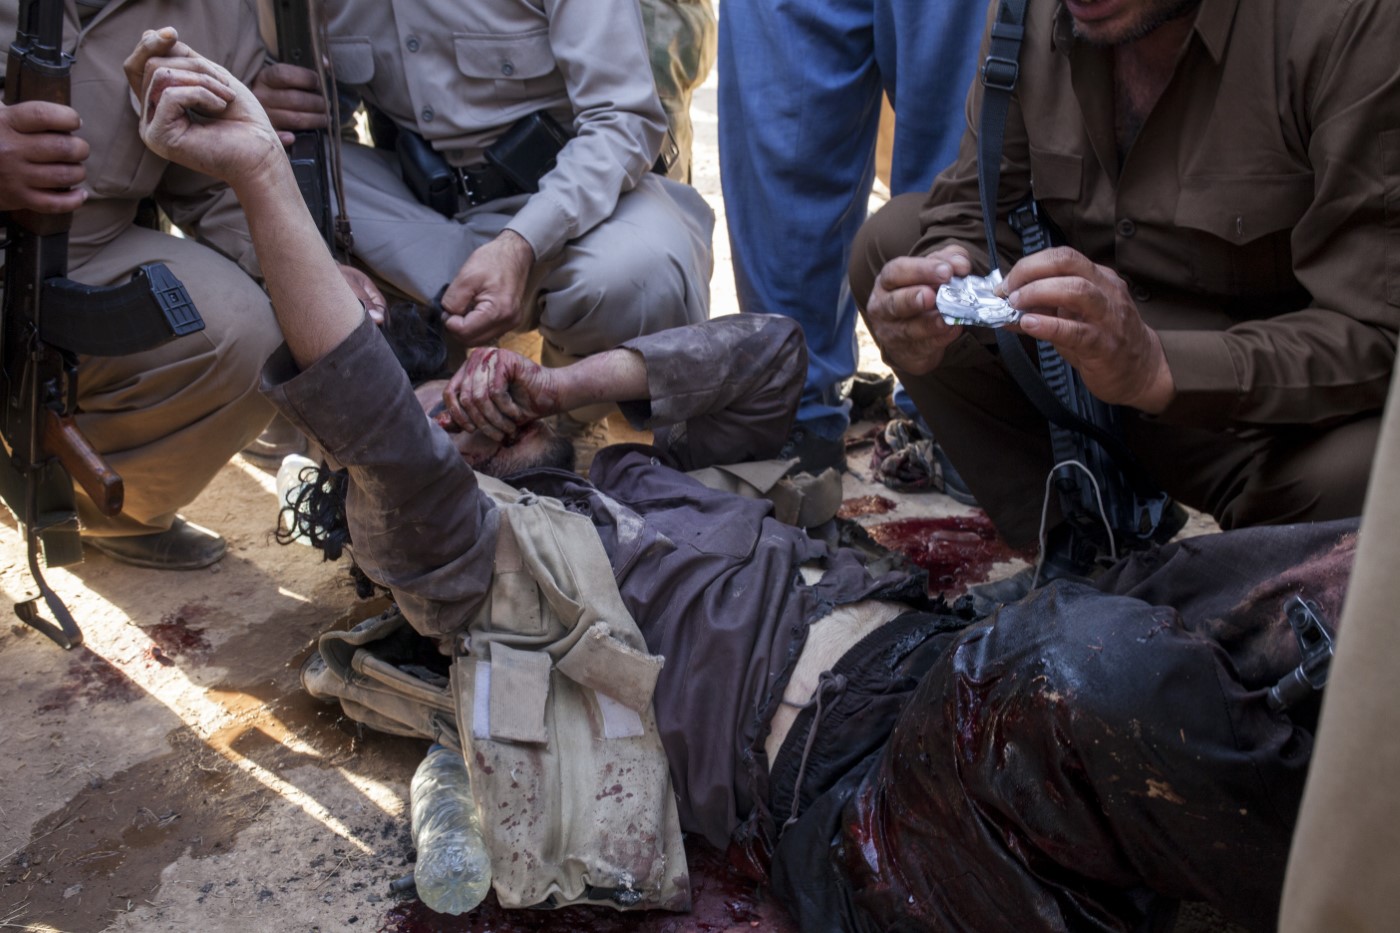 Peshmergas troben estupefaents dins d’una de les butxaques d'un dels membres de l'Estat Islàmic infiltrat a la línia de front de Tuzkhurmatu i abatut per les milícies kurdes minuts abans. Tuzkhurmatu, Kurdistan, Iraq. 20 de juny de 2017